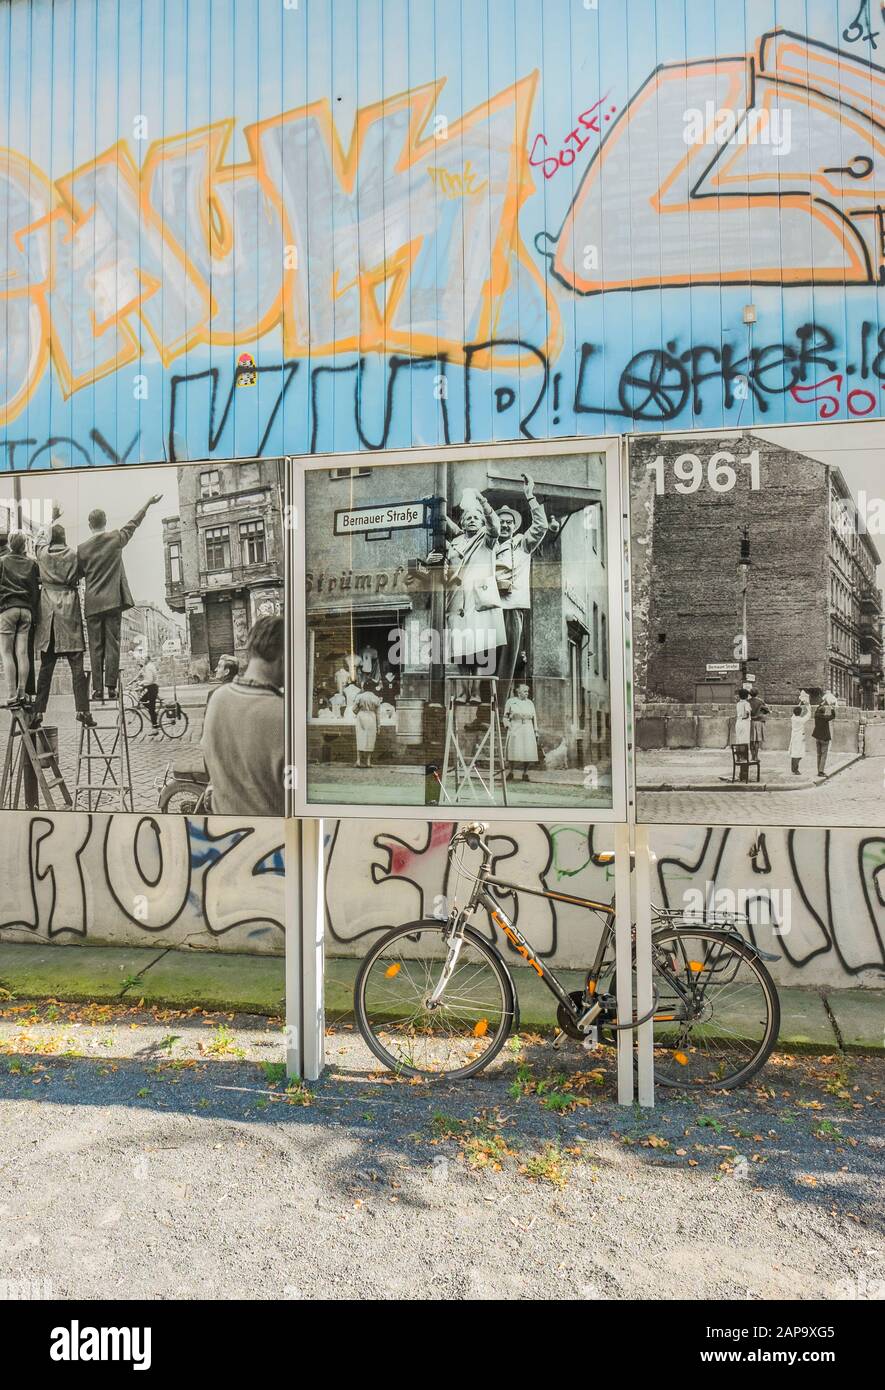 percorso muro di berlino a bernauer strasse, installazione storica di fotografie, mostra permanente Foto Stock